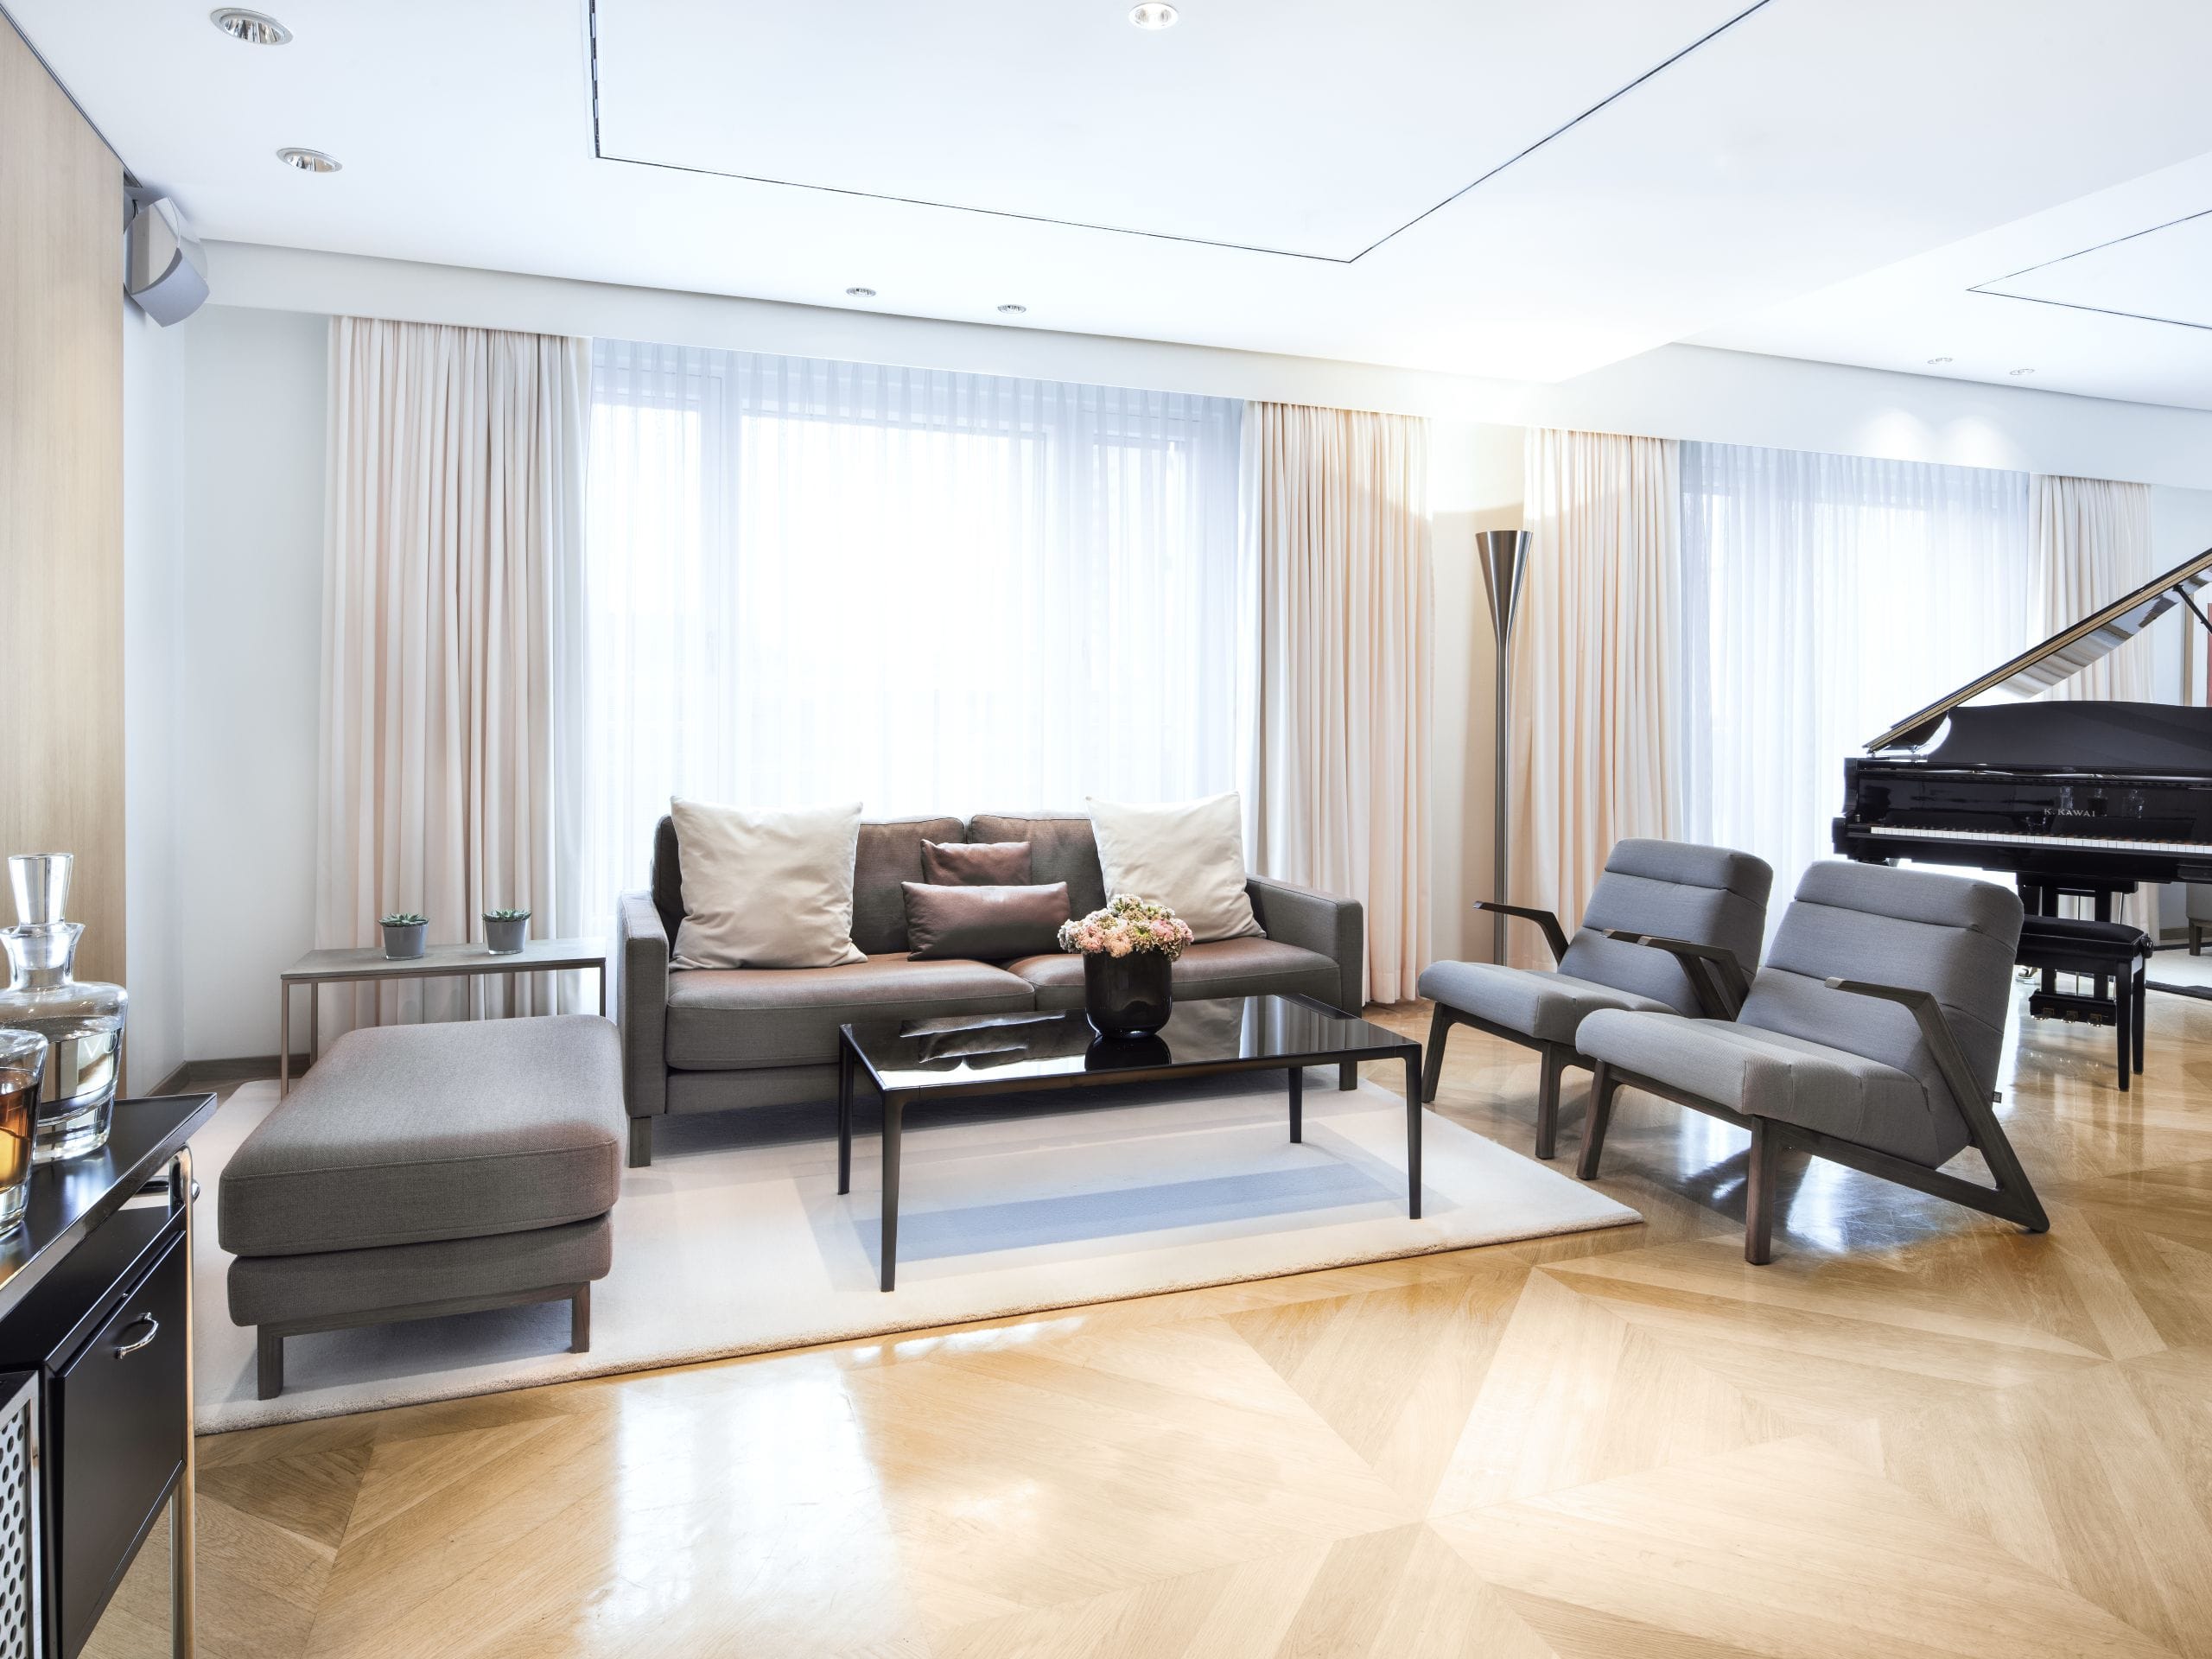 maybach suite livingroom at grand hyatt berlin